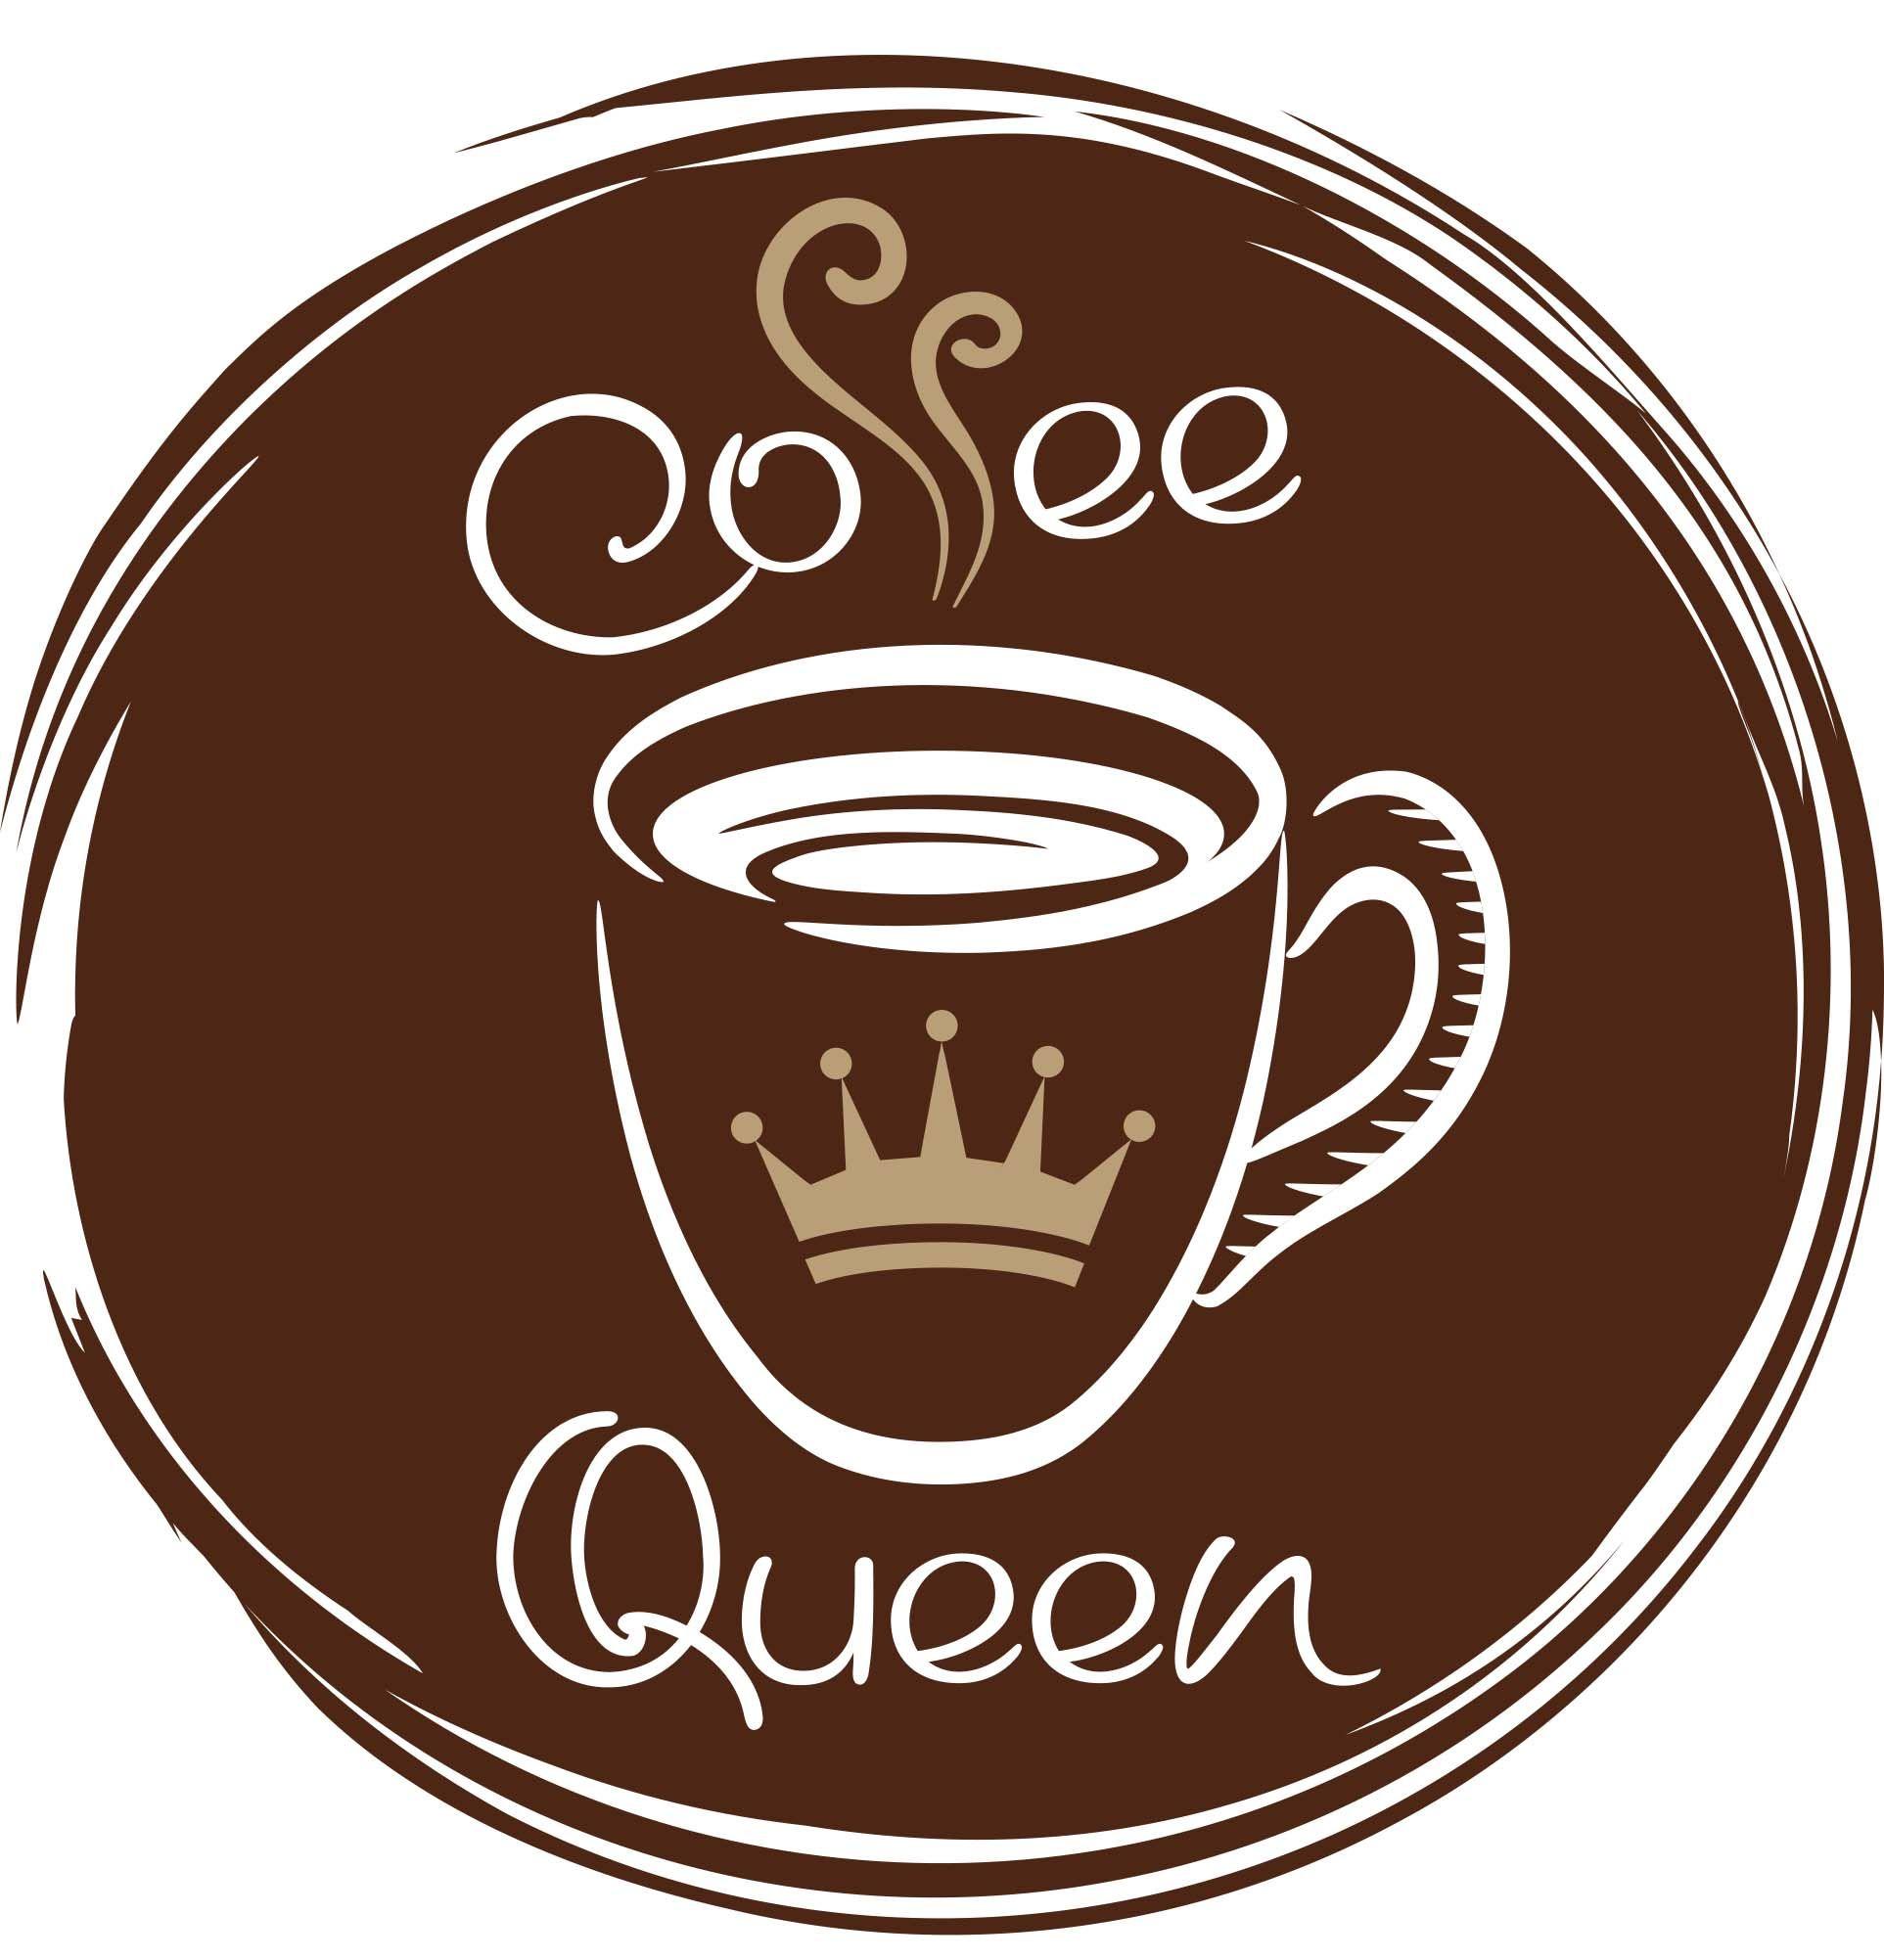 Brown Logo - Coffe Queen Brown logo